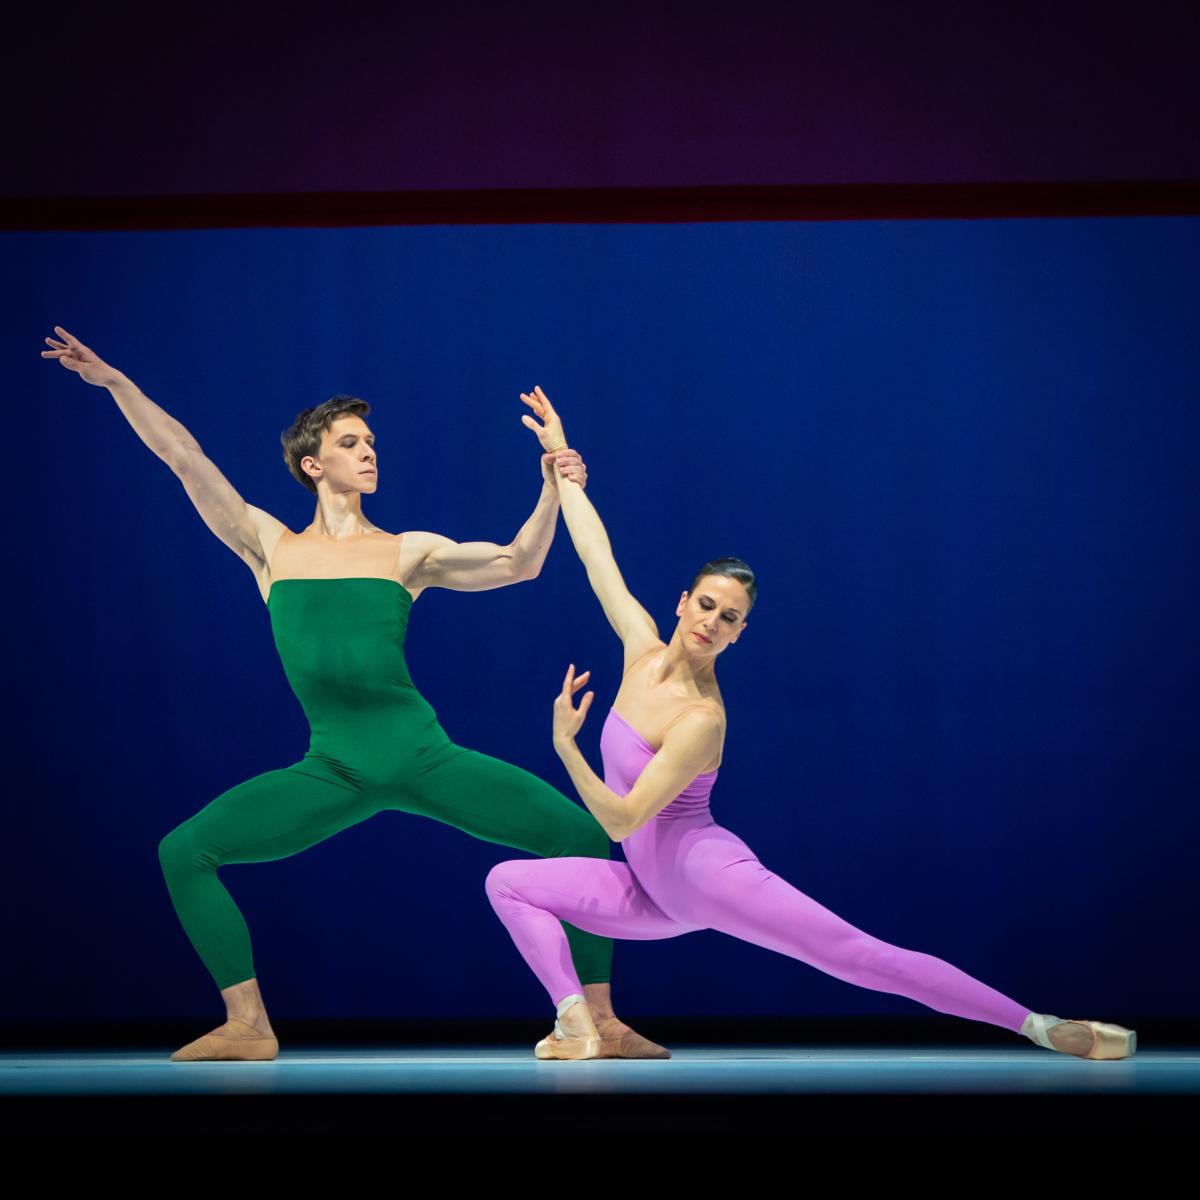 2. A.Popov and C.Schoch, “Goldberg-Variationen” by H.Spoerli, Vienna State Ballet 2023 © Vienna State Ballet / A.Taylor